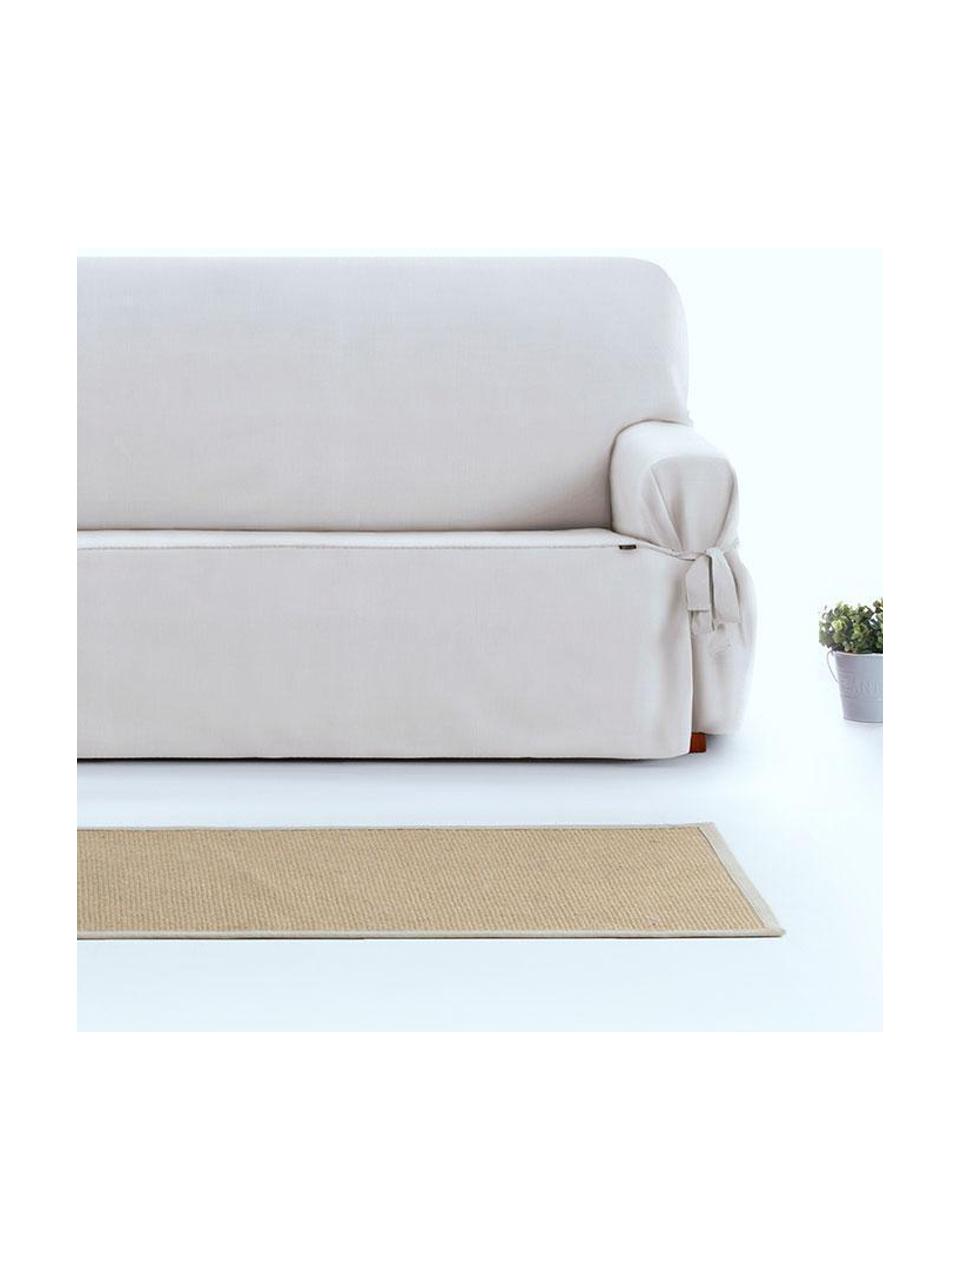 Pokrowiec na sofę Levante, 65% bawełna, 35% poliester, Odcienie kremowego, S 160 x G 110 cm